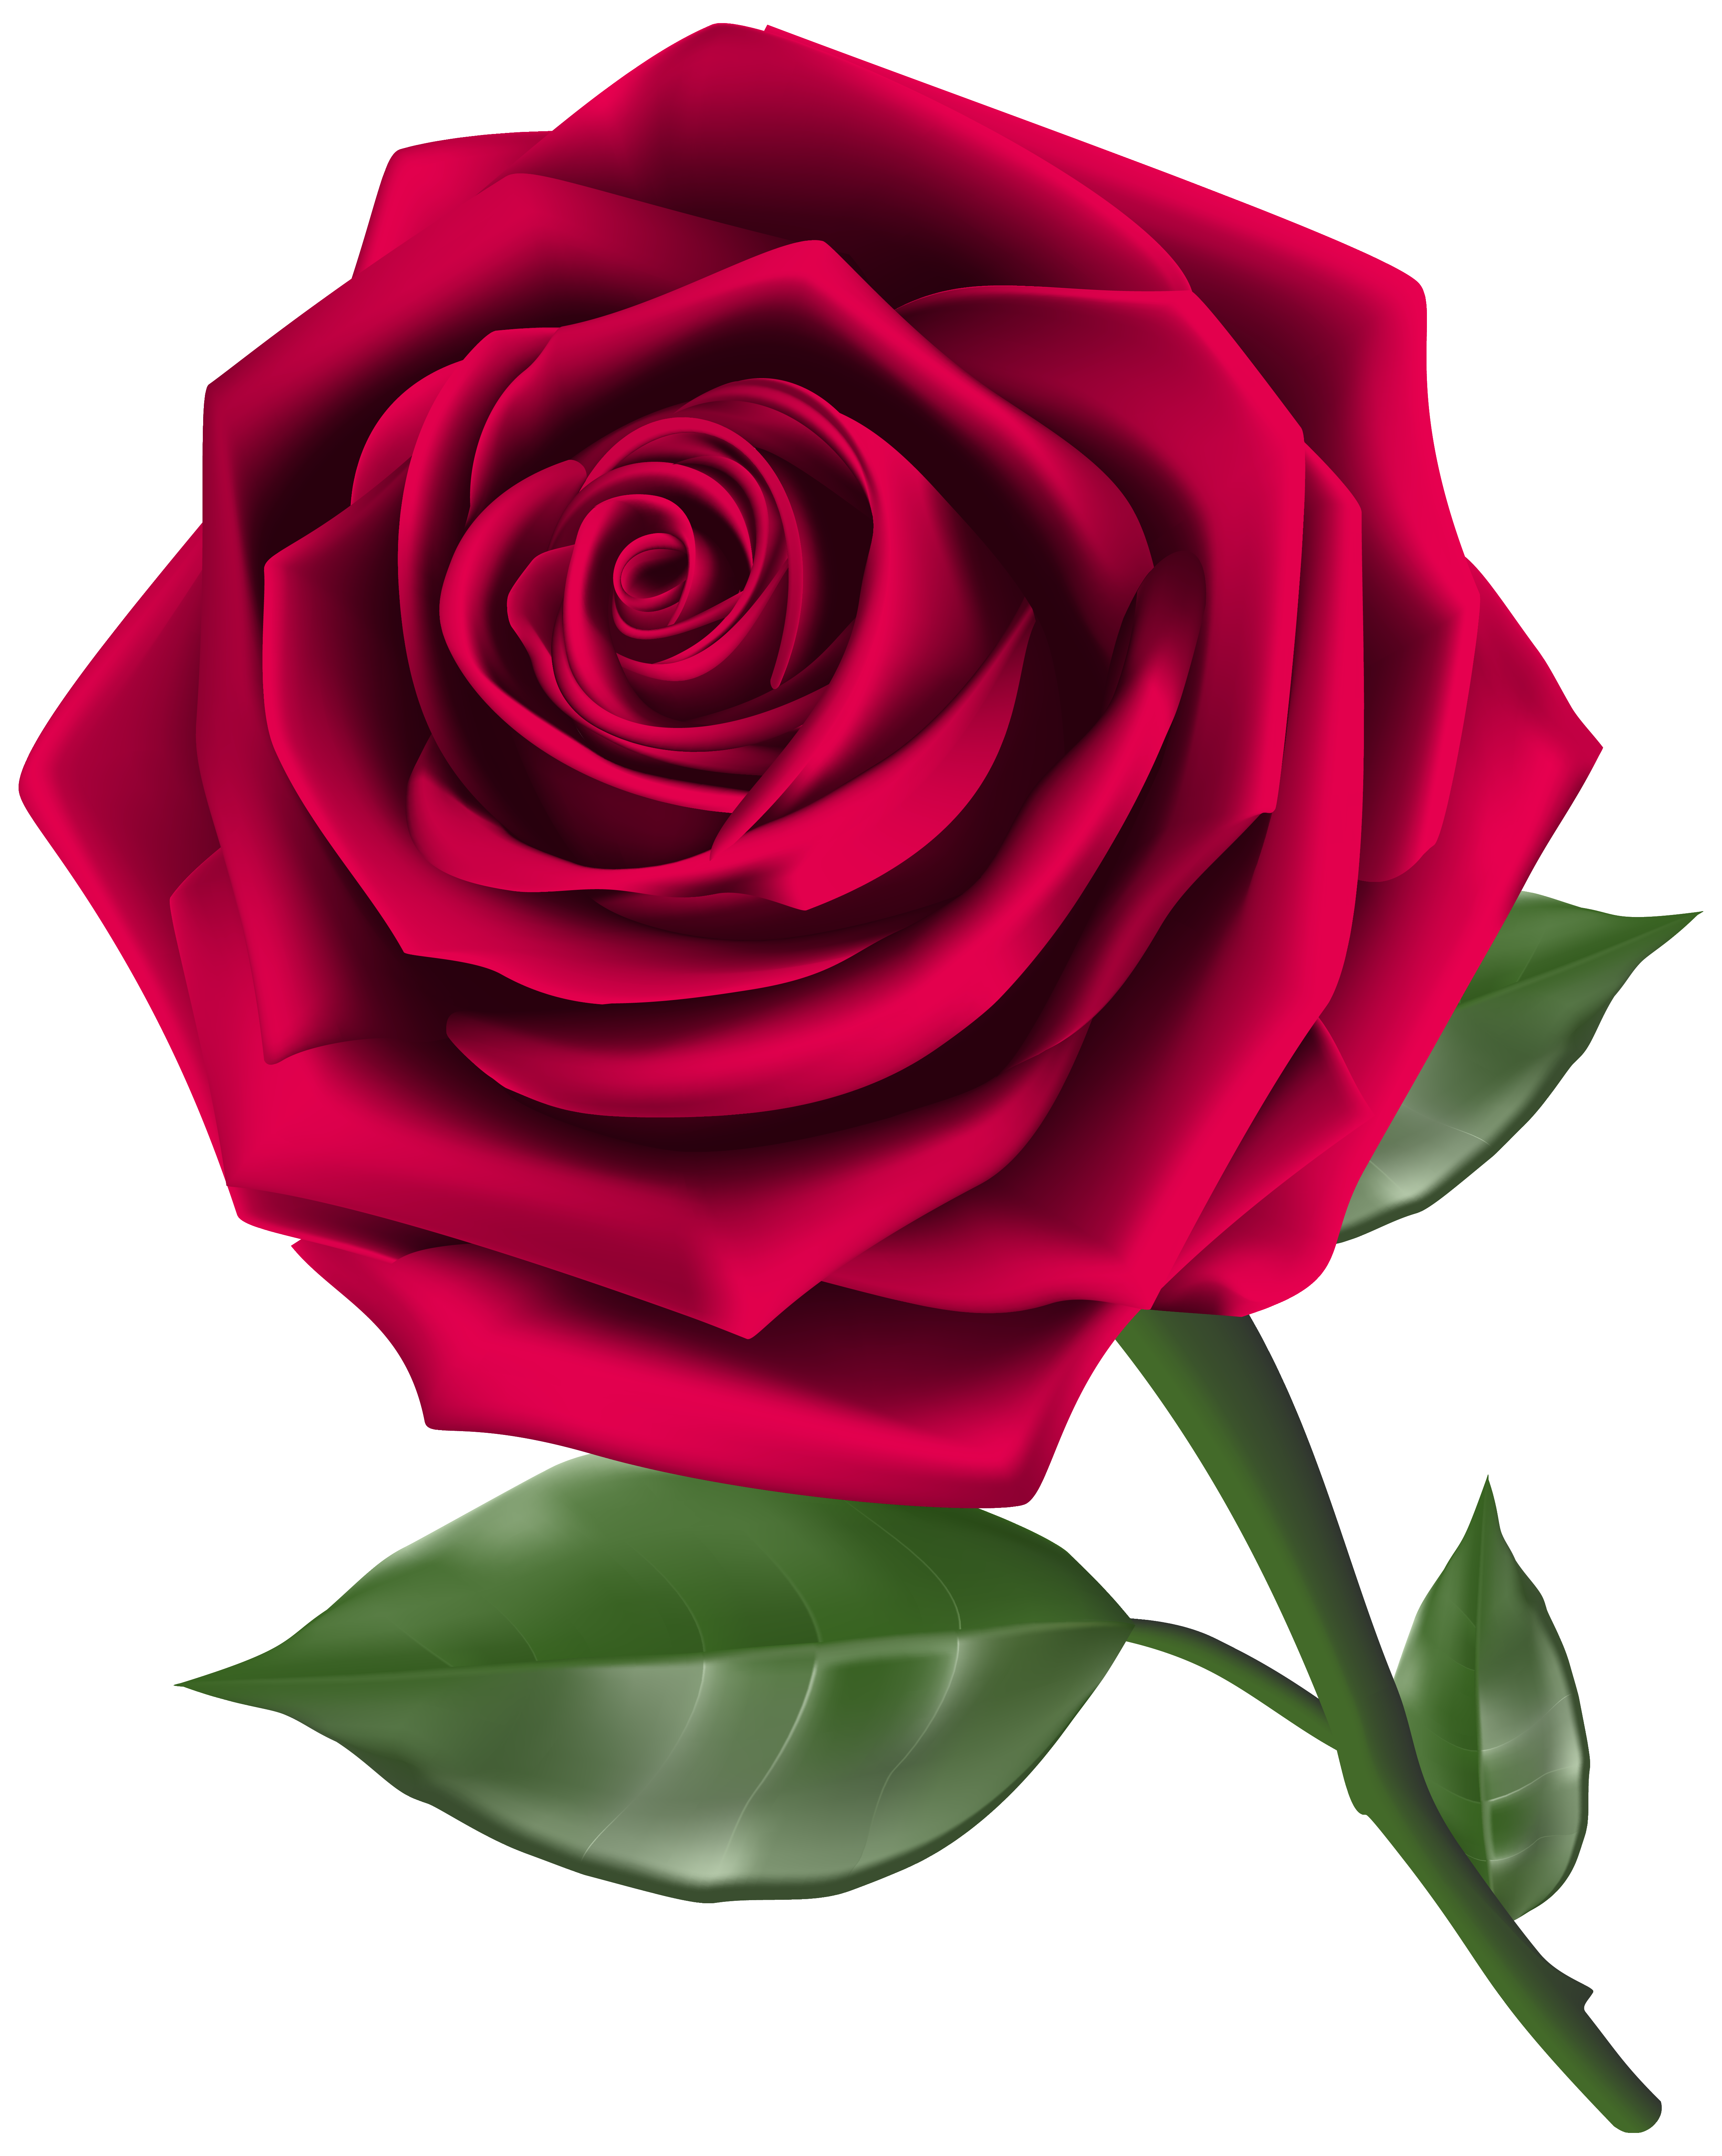 Rose Flower Clip Art Free Rose Svg File Free Transparent Png | Images ...